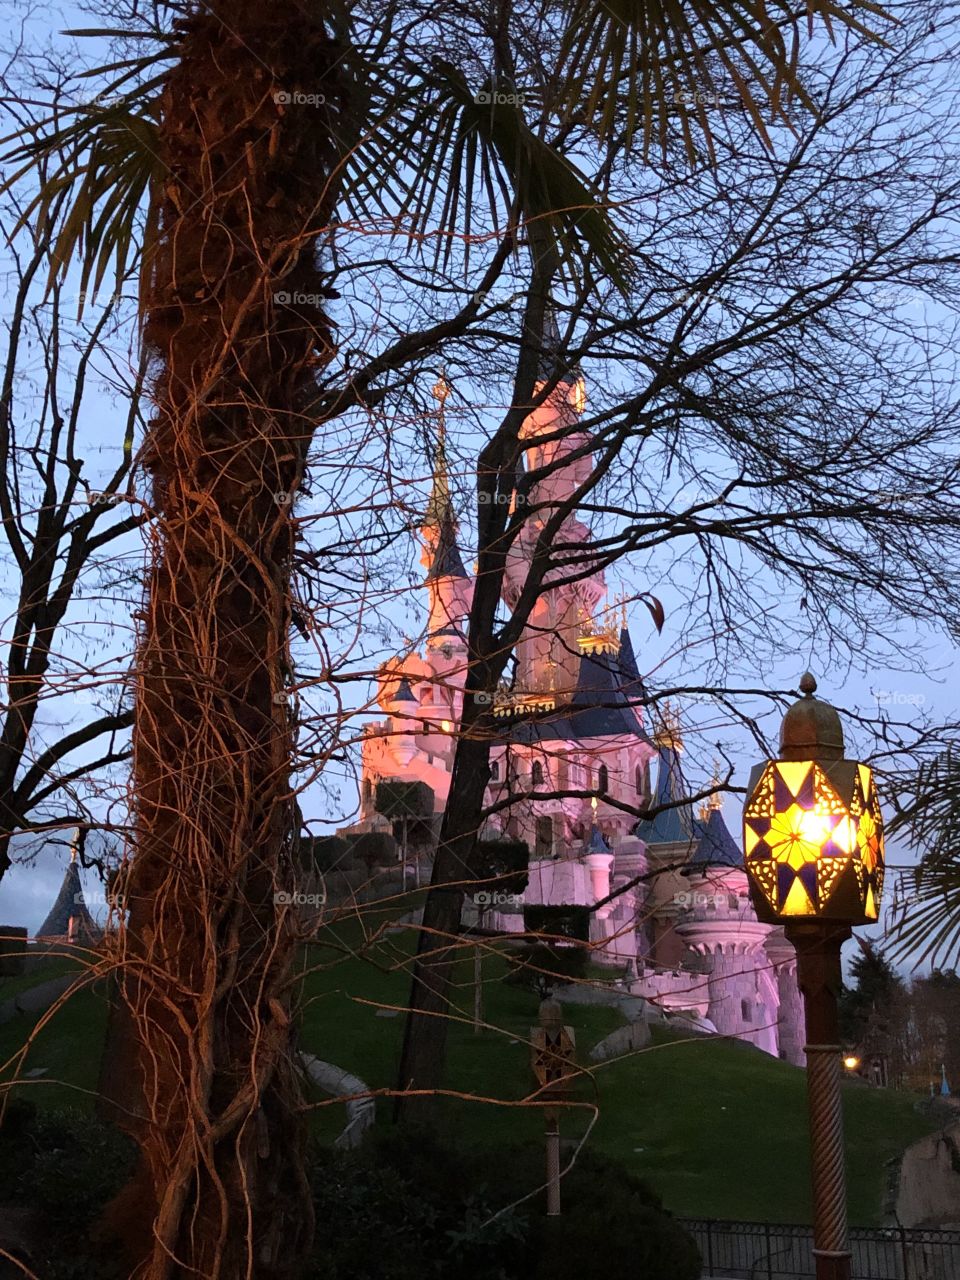 Castle Disneyland Paris